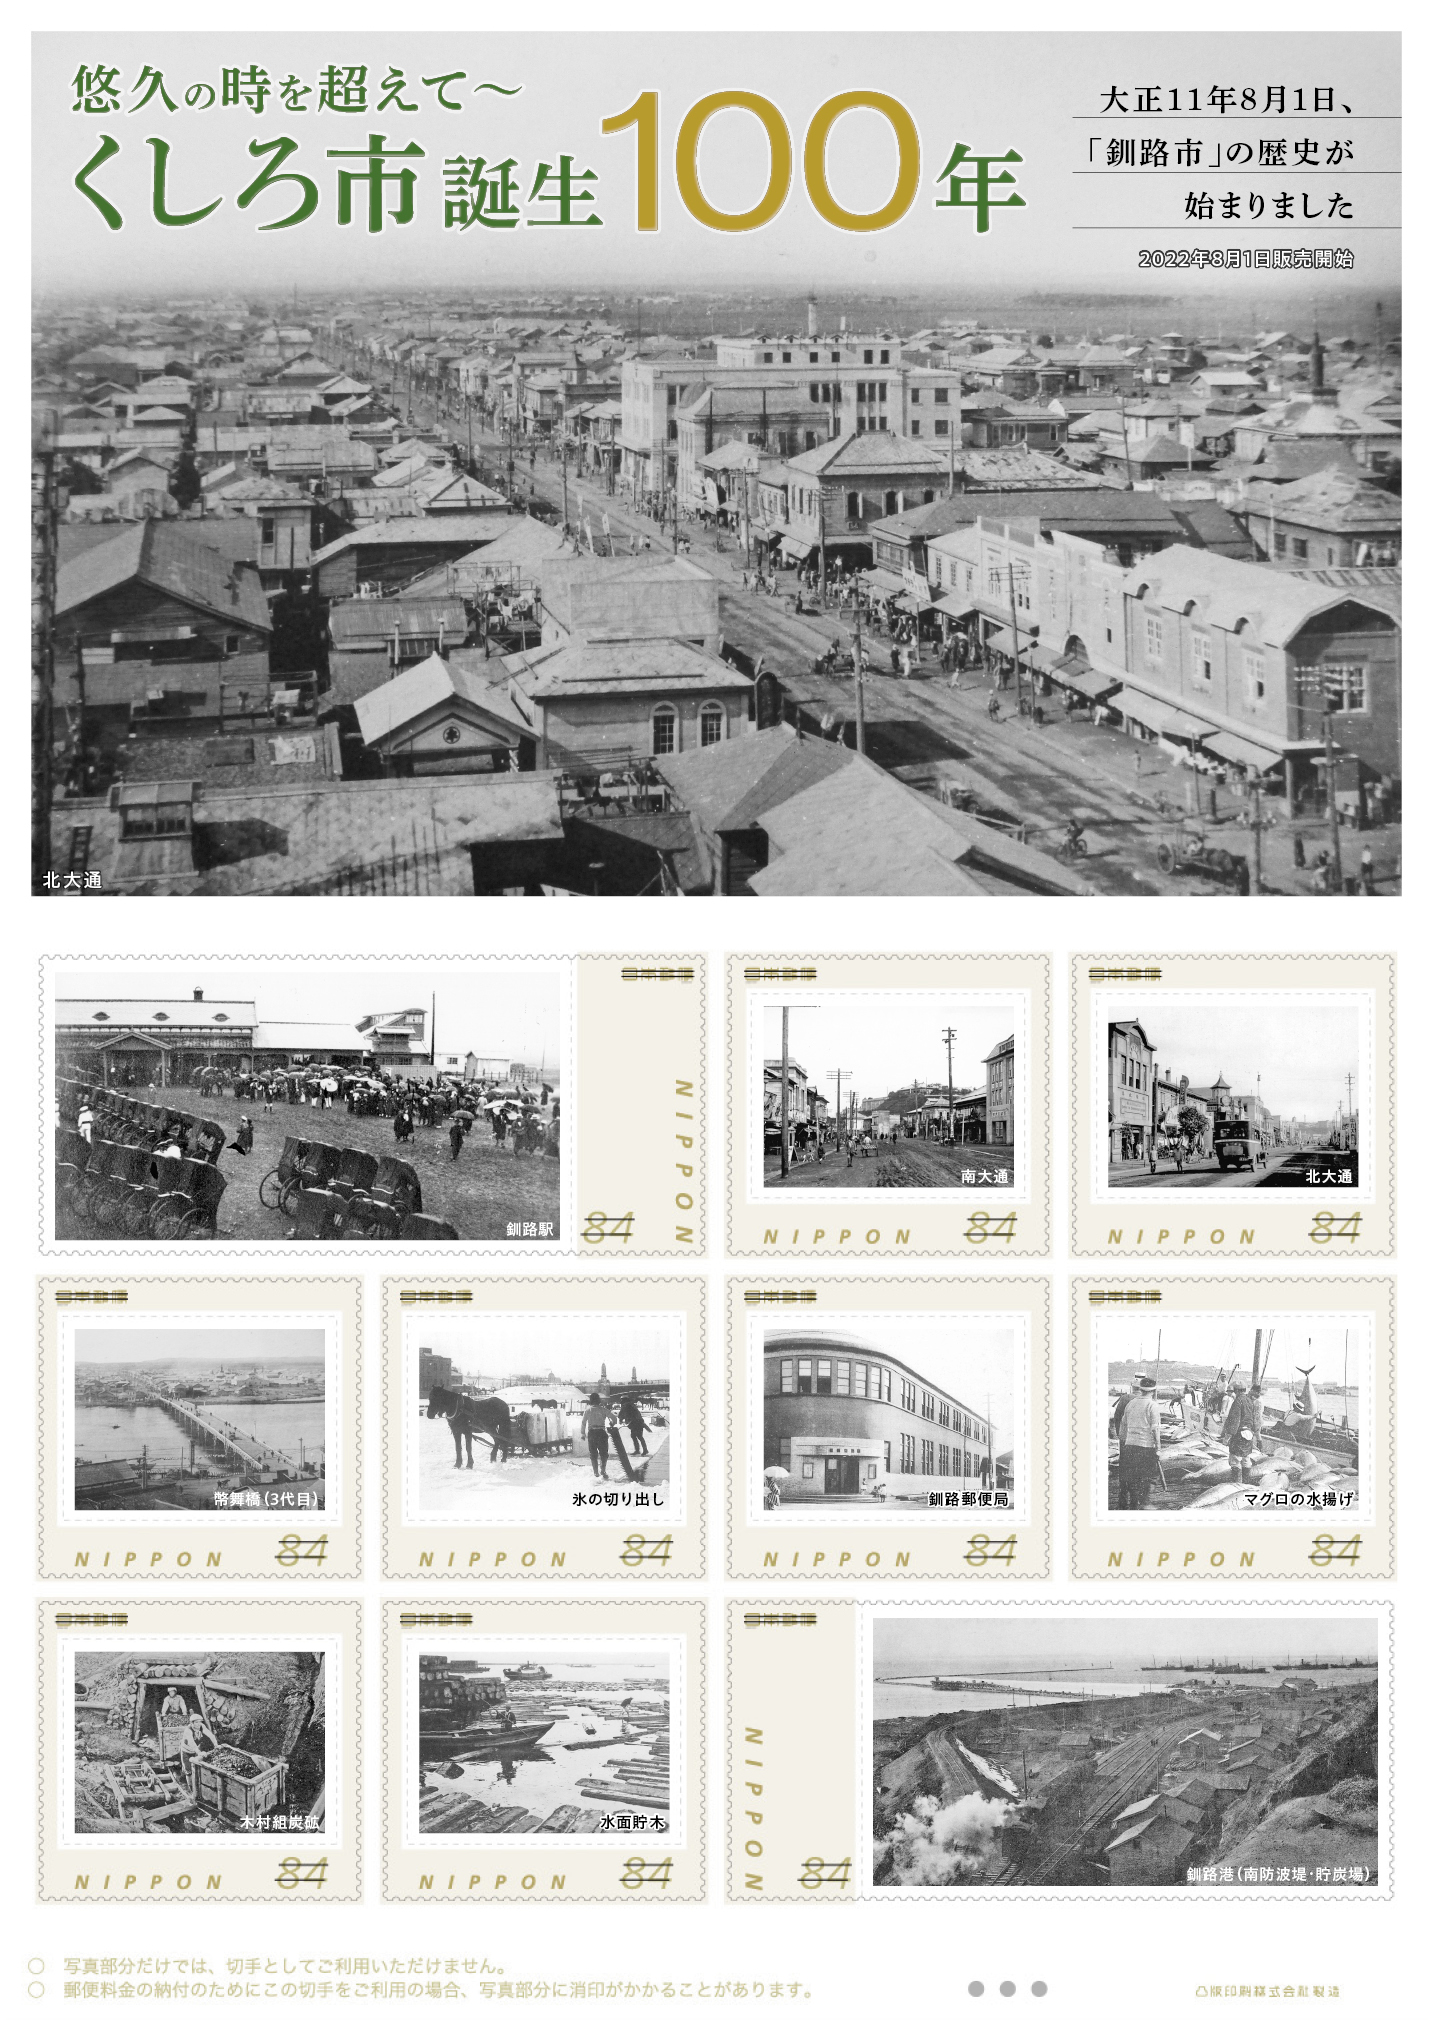 オリジナル フレーム切手「悠久の時を超えて～くしろ市誕生100年」の販売開始